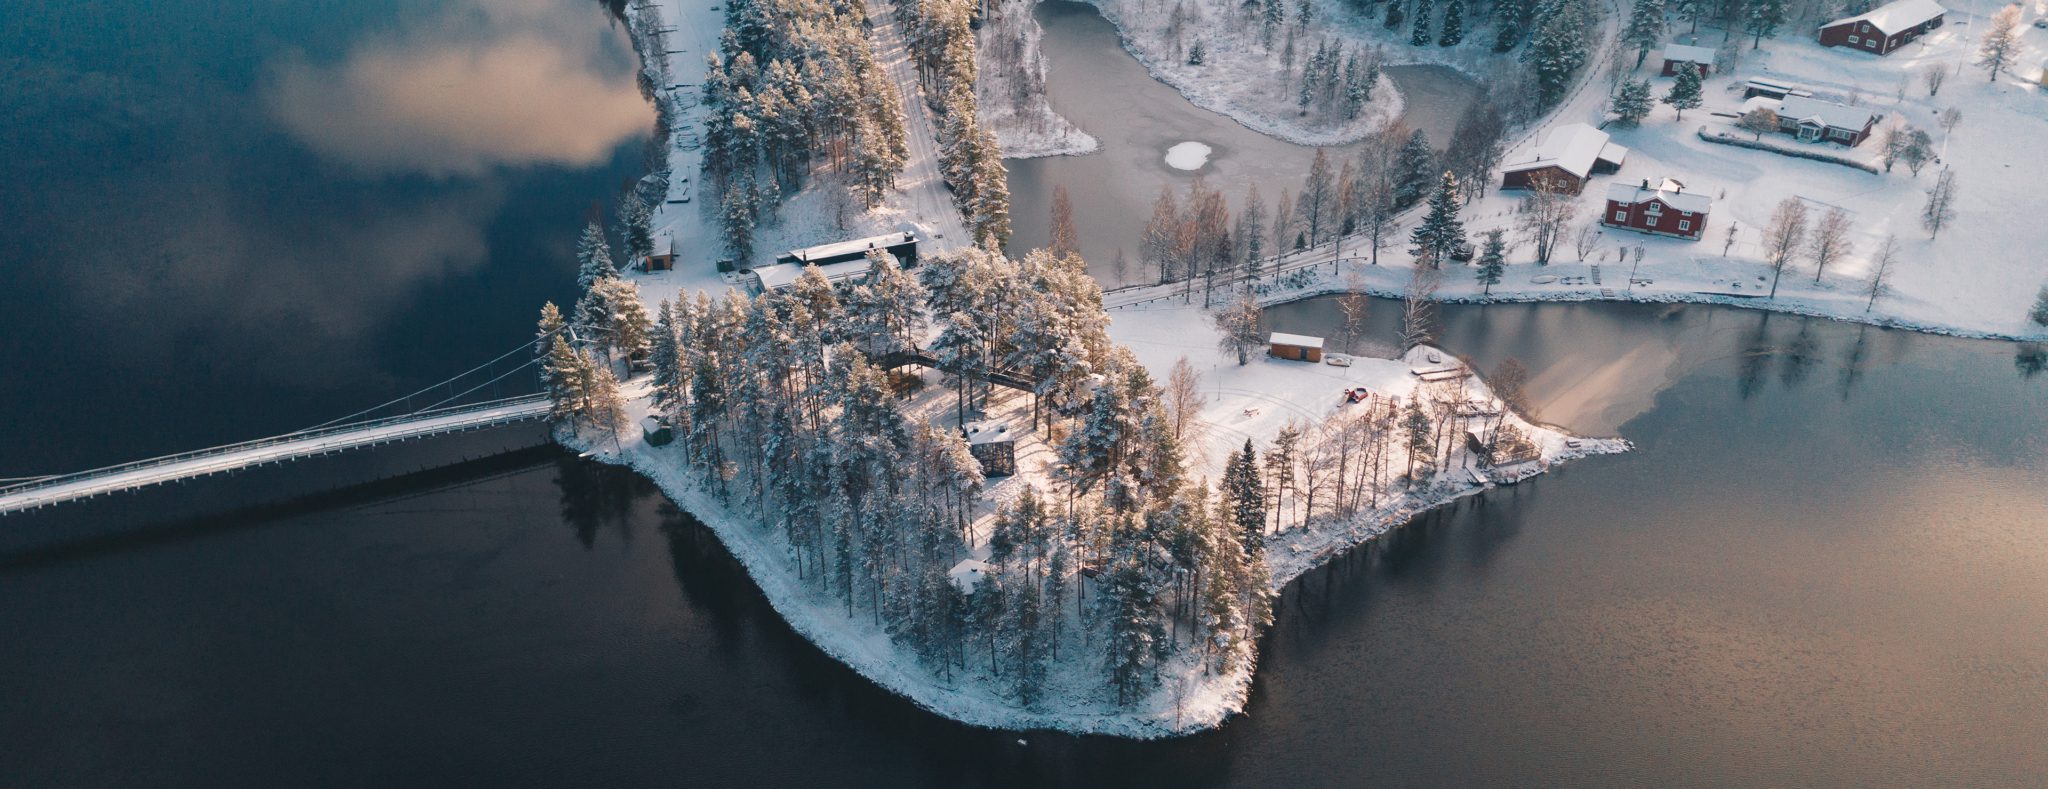 Granö Beckasin, Noord-Zweden